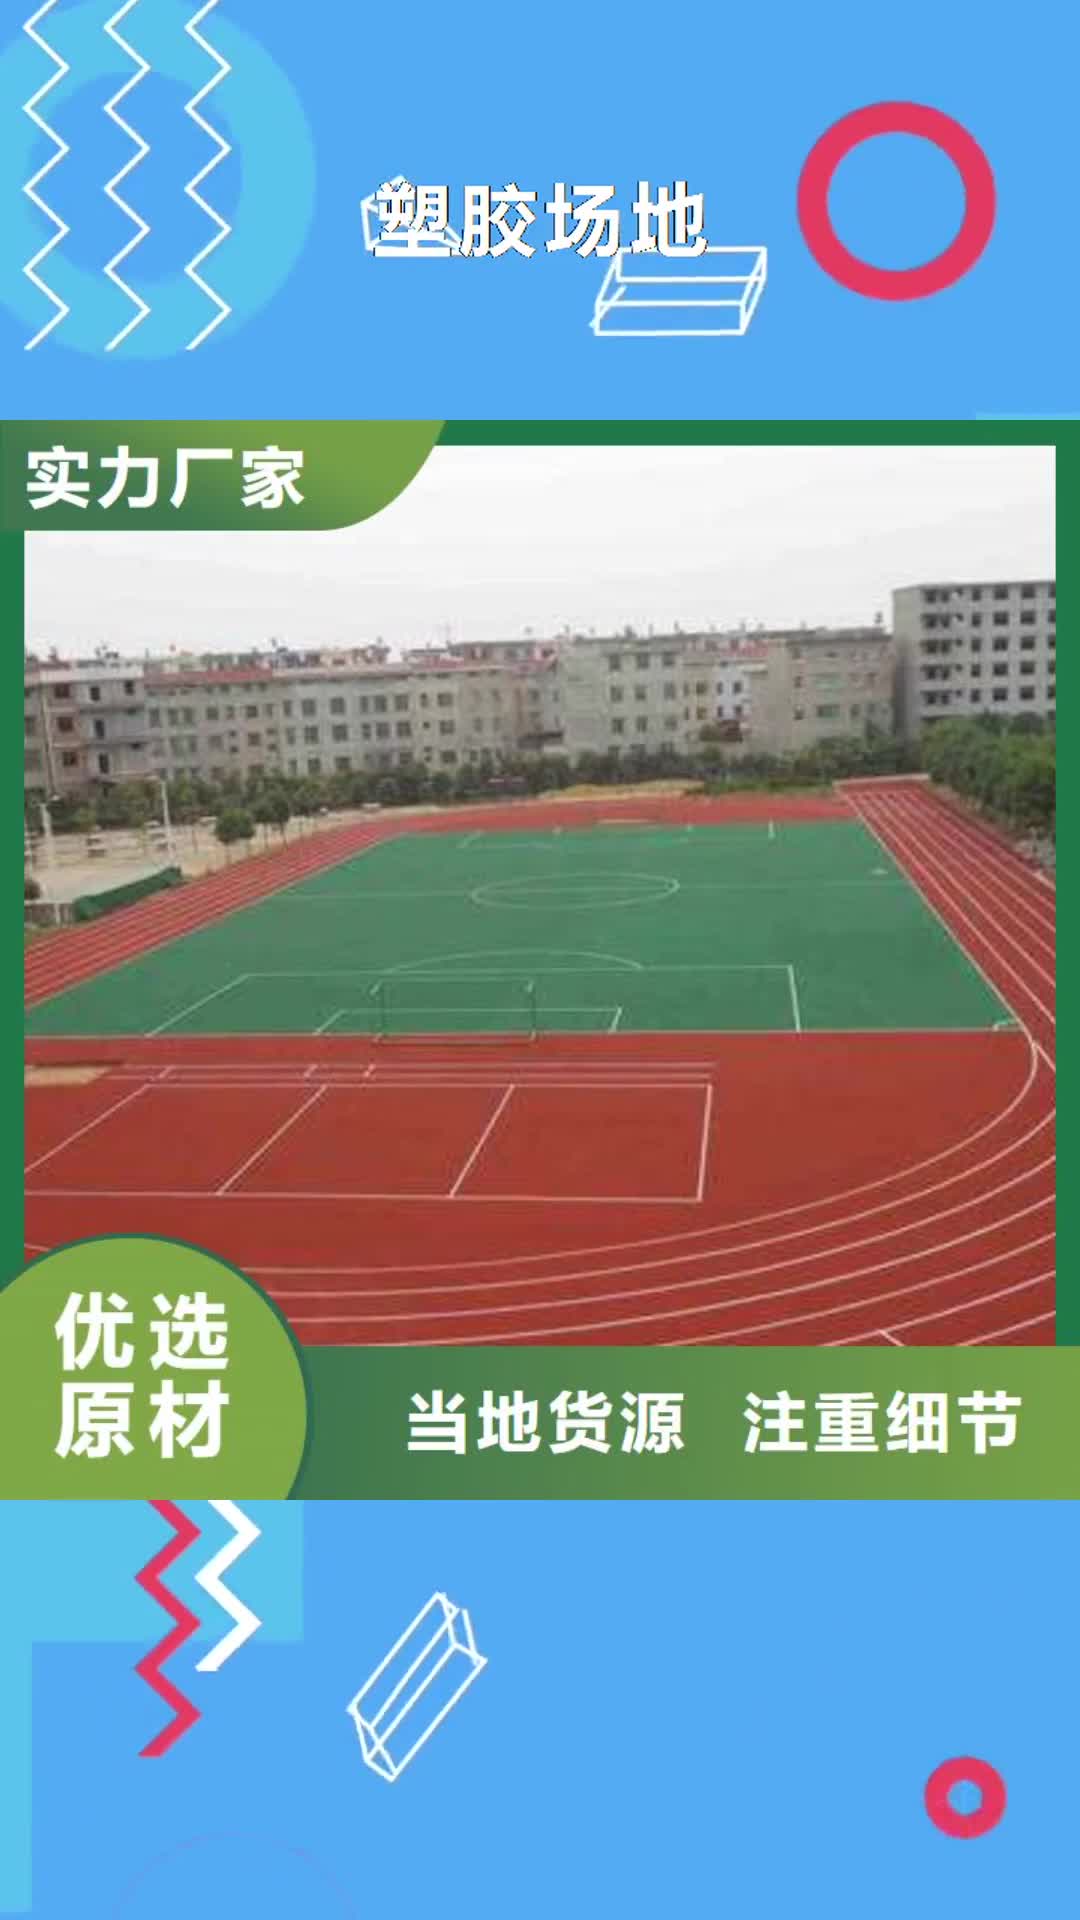 黔东南【塑胶场地】_硅pu面漆网球场厂家规格全